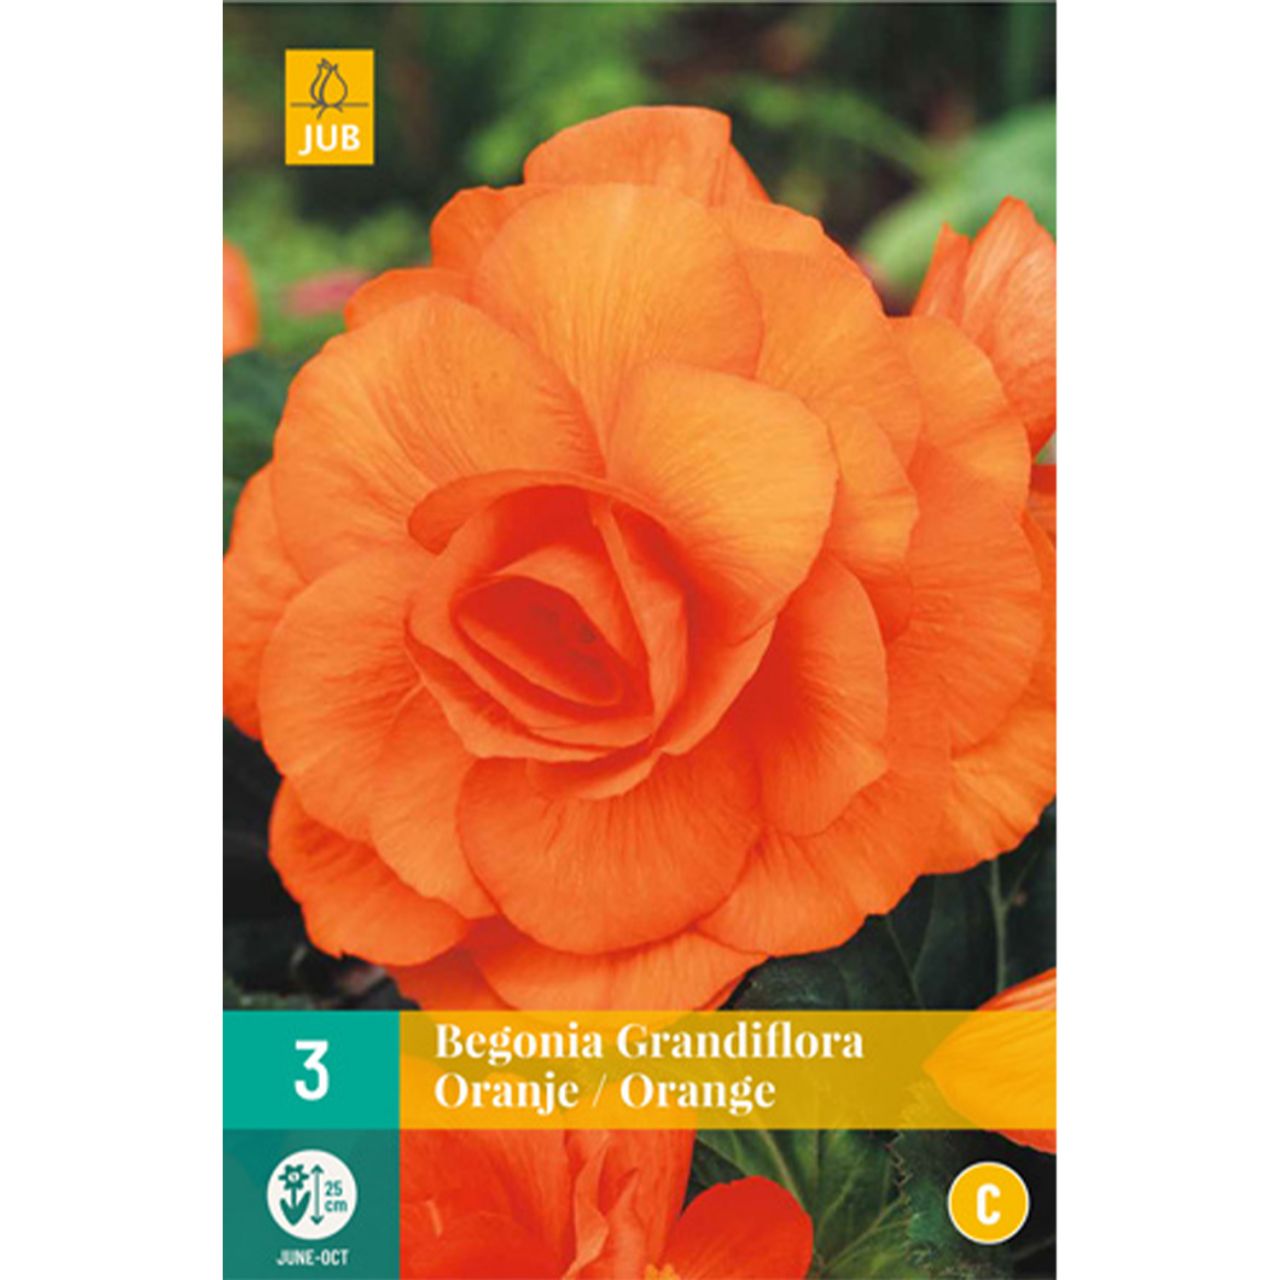 Kategorie <b>Frühlings-Blumenzwiebeln </b> - Riesenblütige Begonie 'Grandiflora' orange - 3 Stück - Begonia Grandiflora